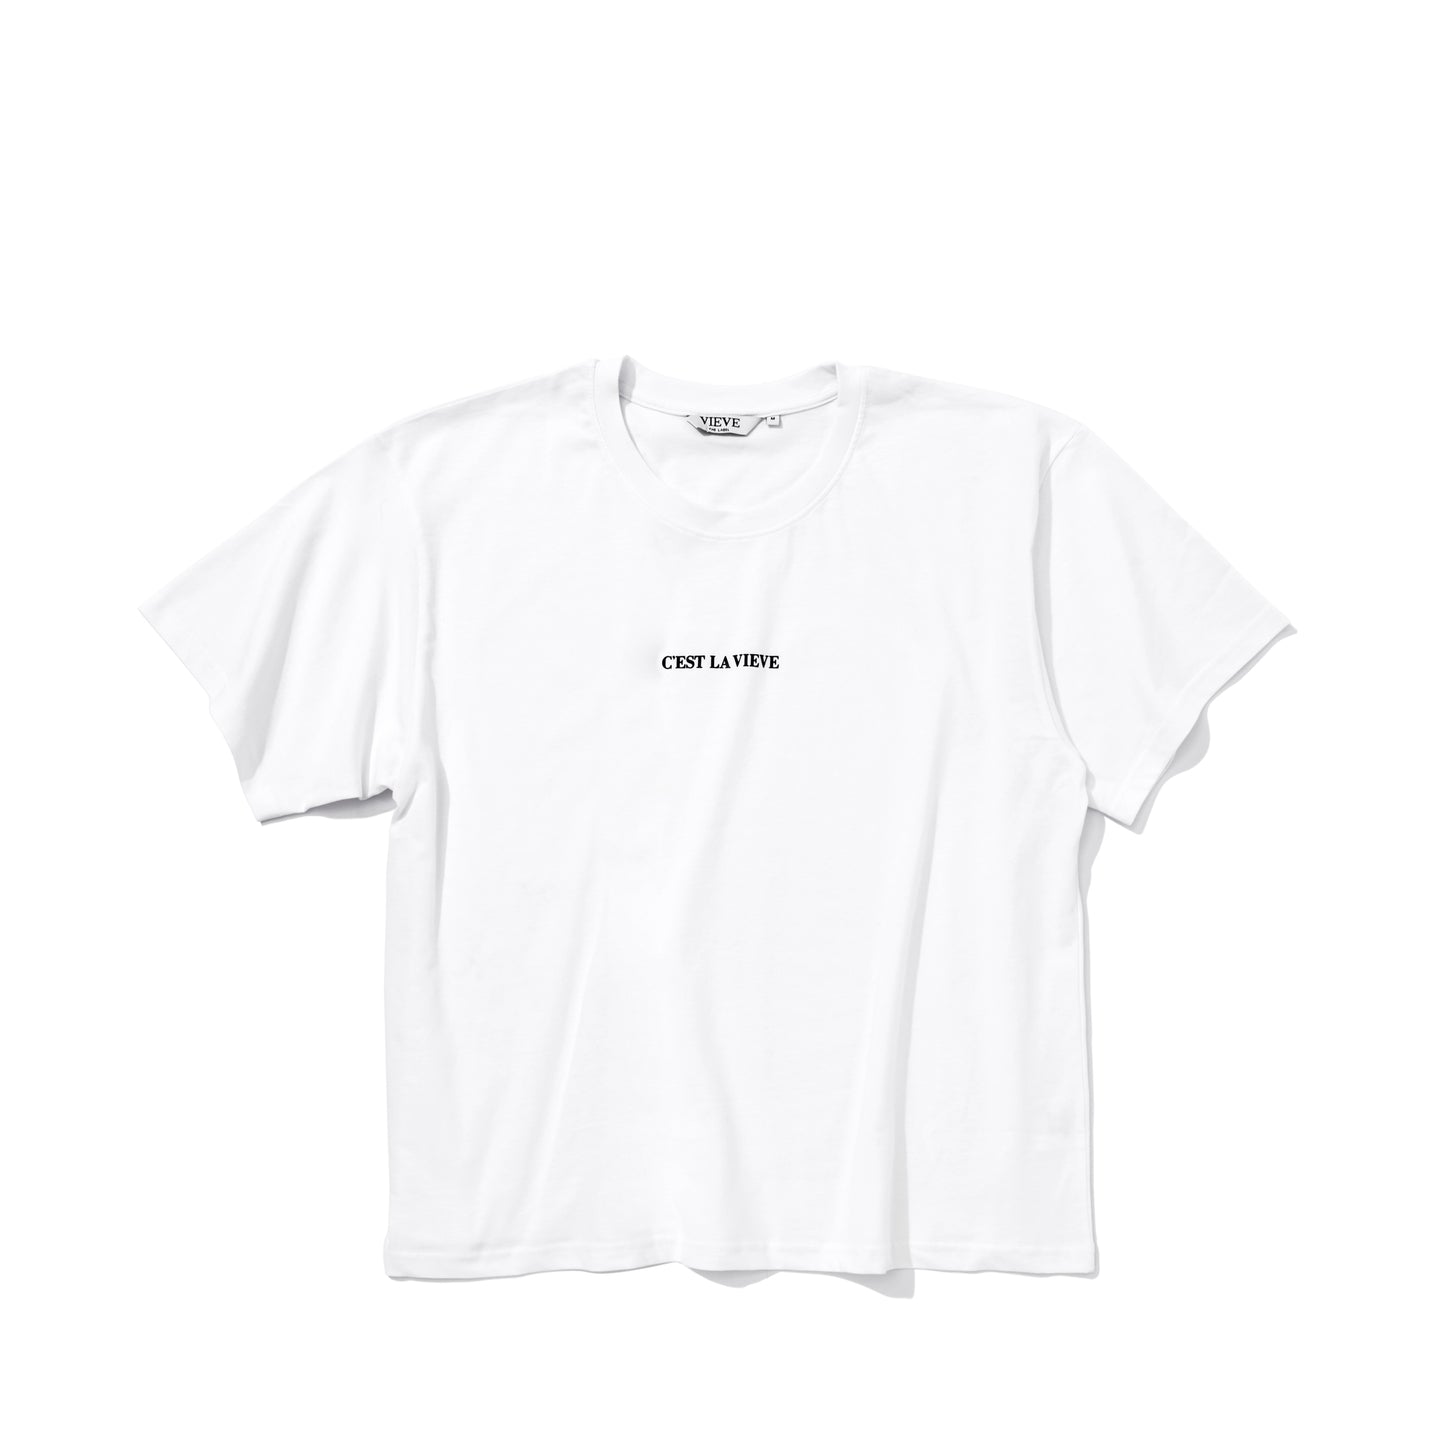 C'est La VIEVE T-Shirt | White 100% Cotton T-Shirt | VIEVE